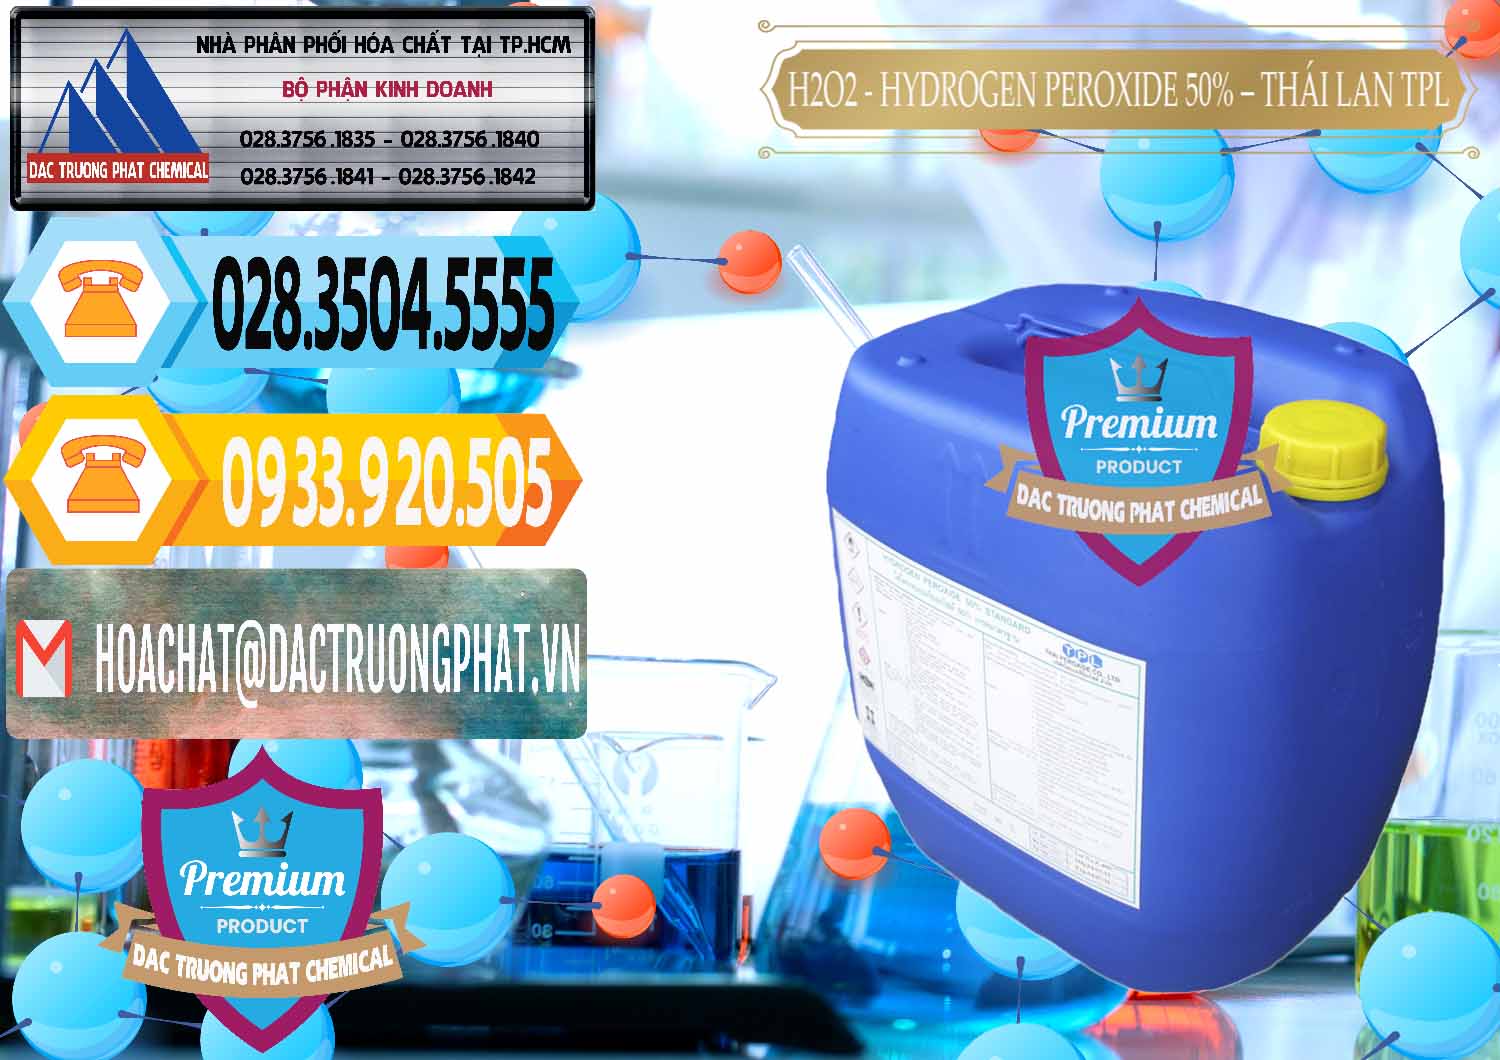 Cty chuyên nhập khẩu & bán H2O2 - Hydrogen Peroxide 50% Thái Lan TPL - 0076 - Chuyên cung cấp ( bán ) hóa chất tại TP.HCM - hoachattayrua.net